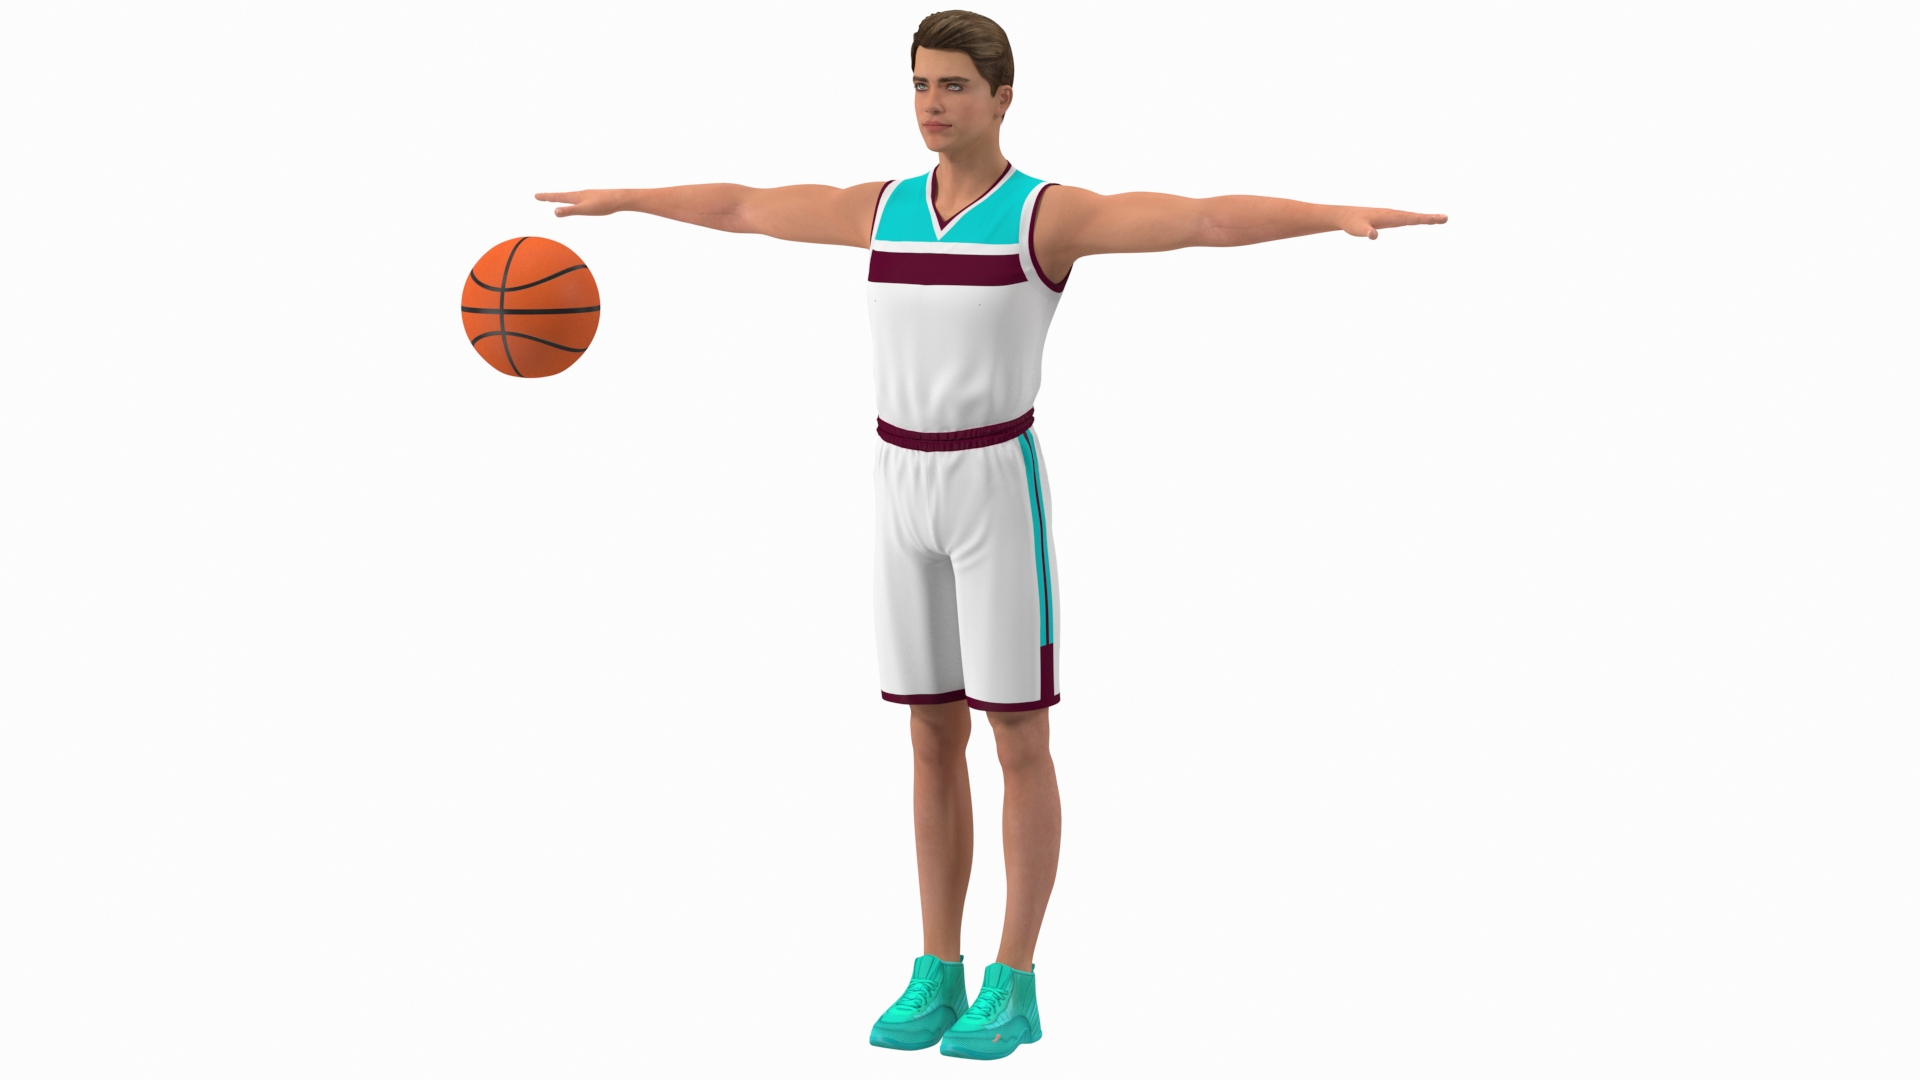 Basketball Pose Images - Free Download on Freepik